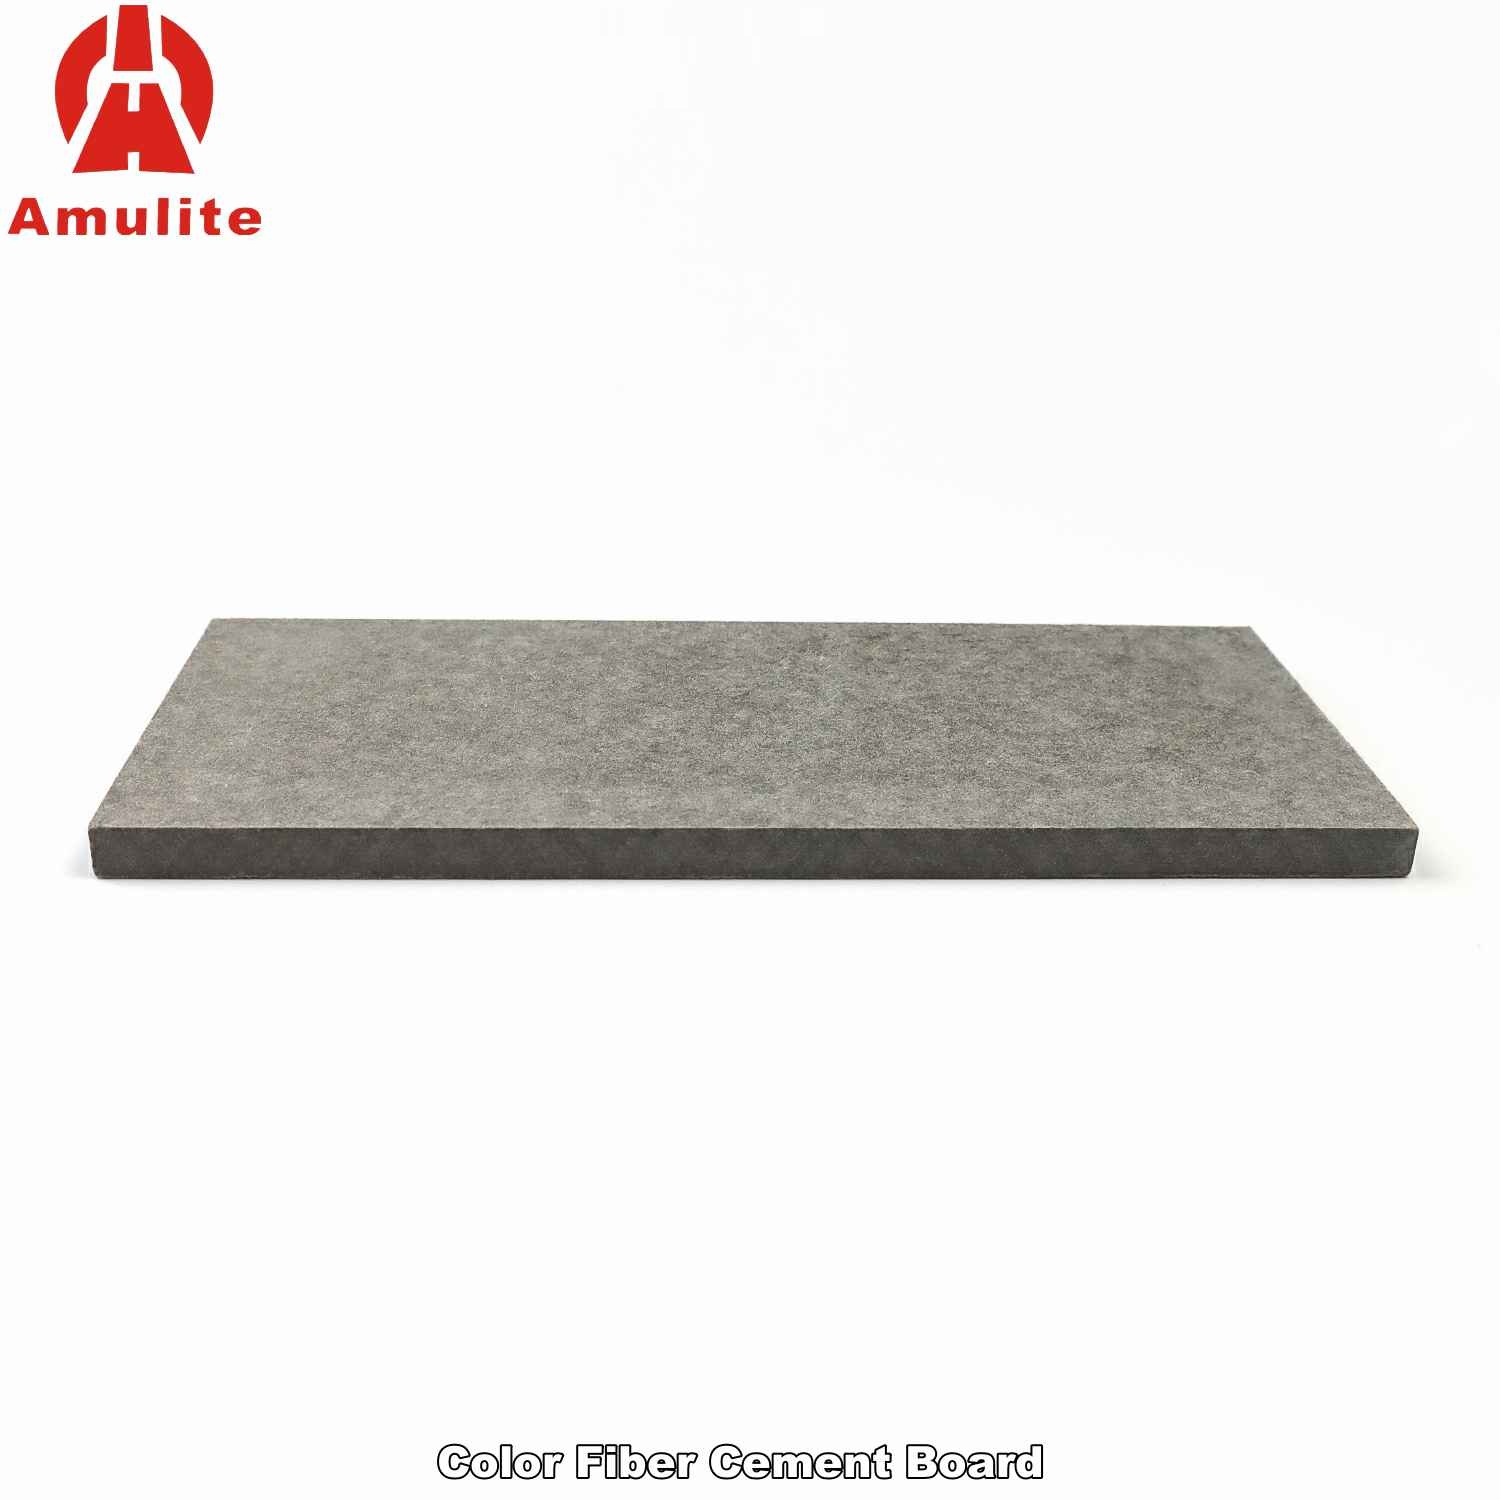 Color Fiber Cement Board (10)